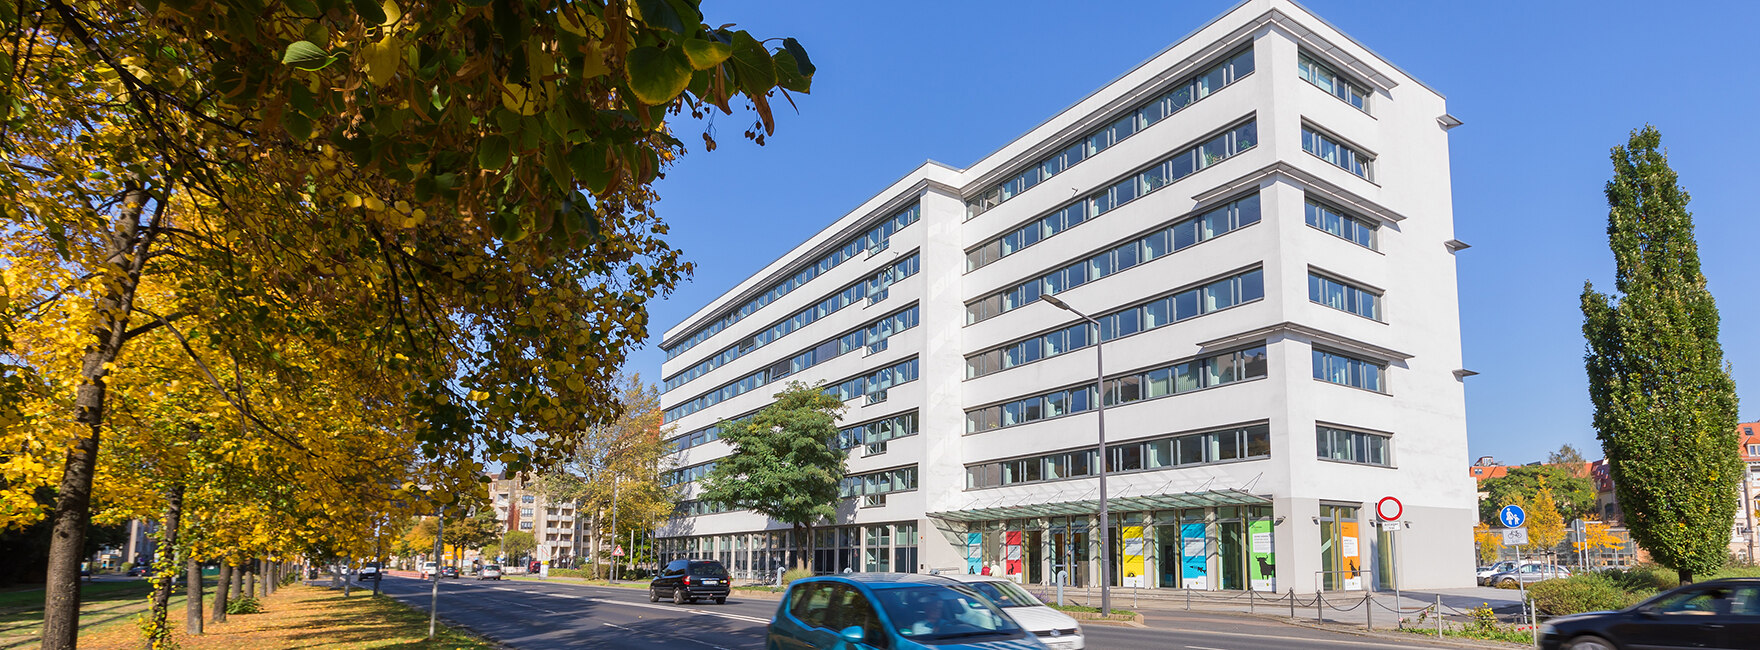 Blick über die Albertstraße auf das Gebäude des Sächsischen Staatsministeriums für Soziales und Verbraucherschutz